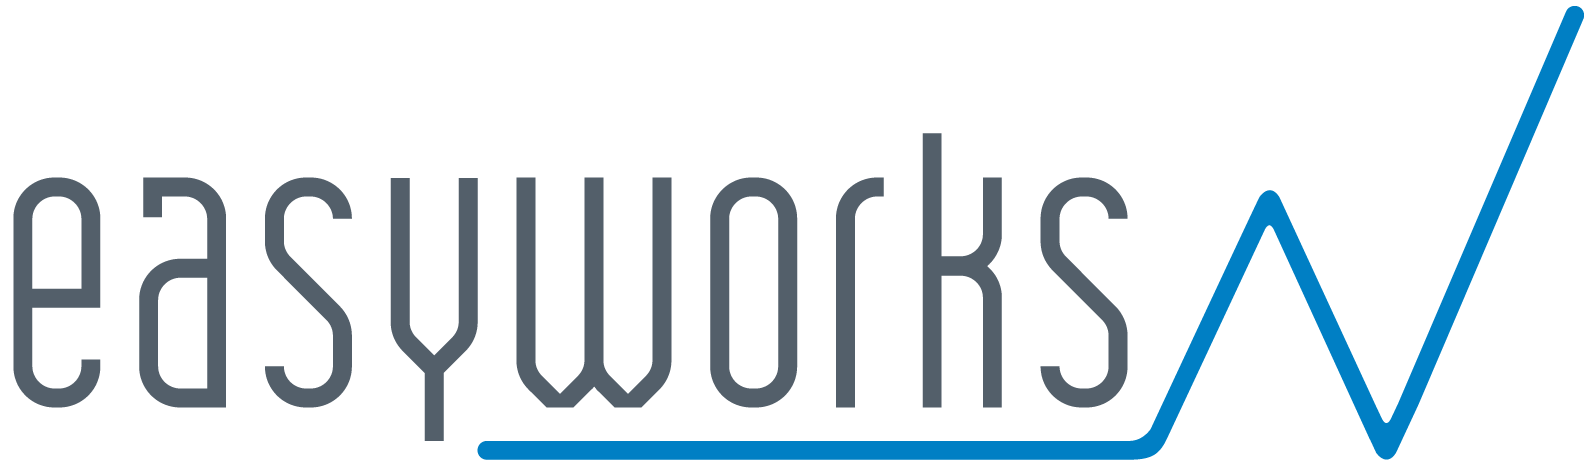 Logo Easyworks